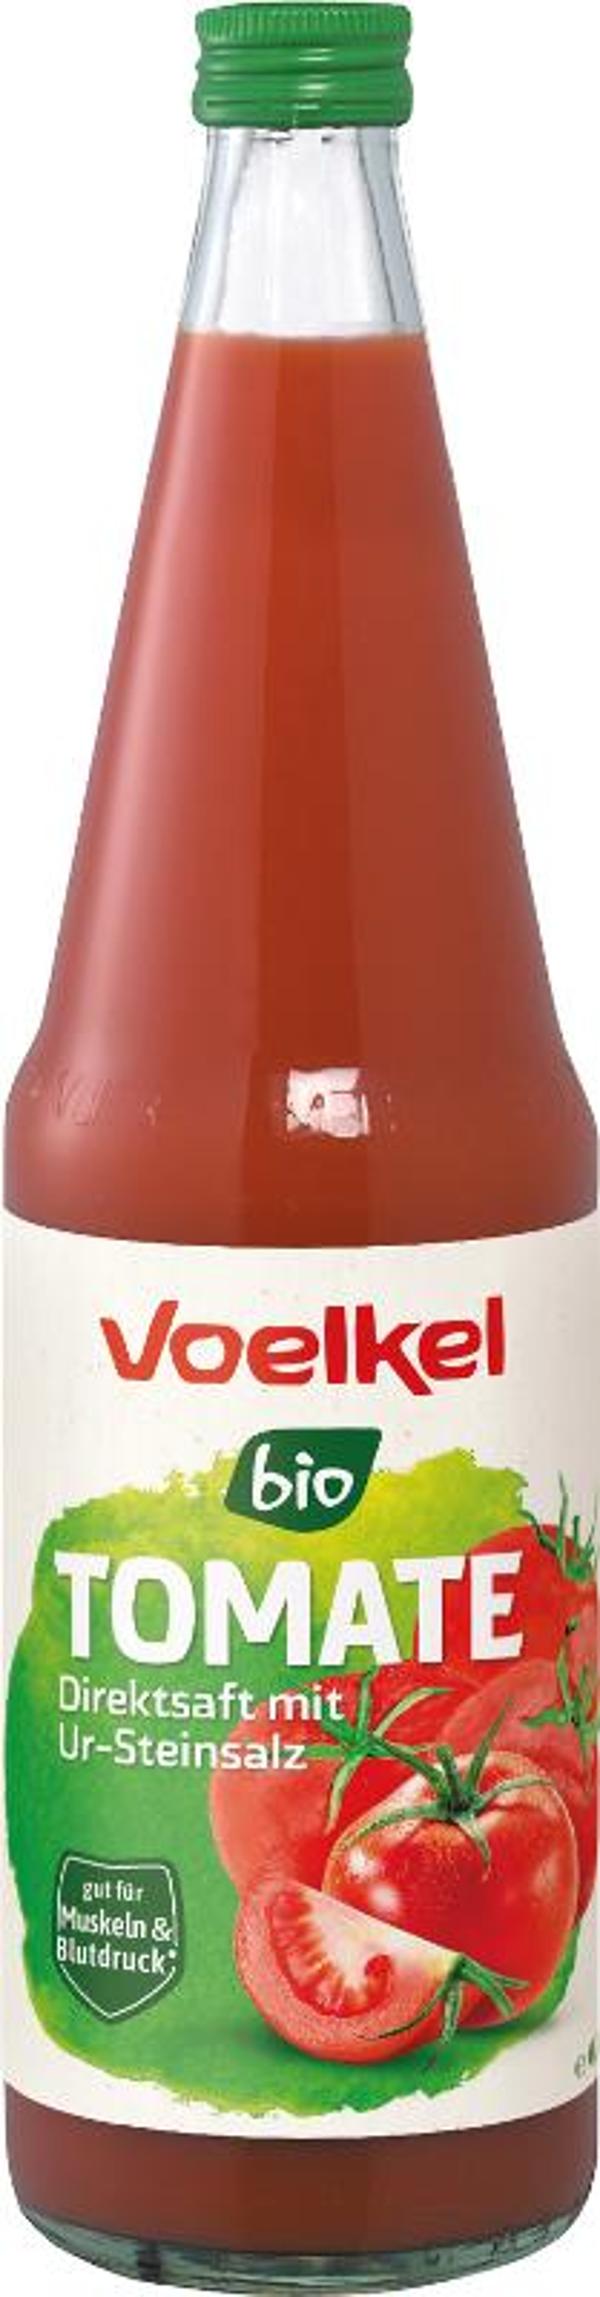 Produktfoto zu Tomatensaft Flasche Voelkel